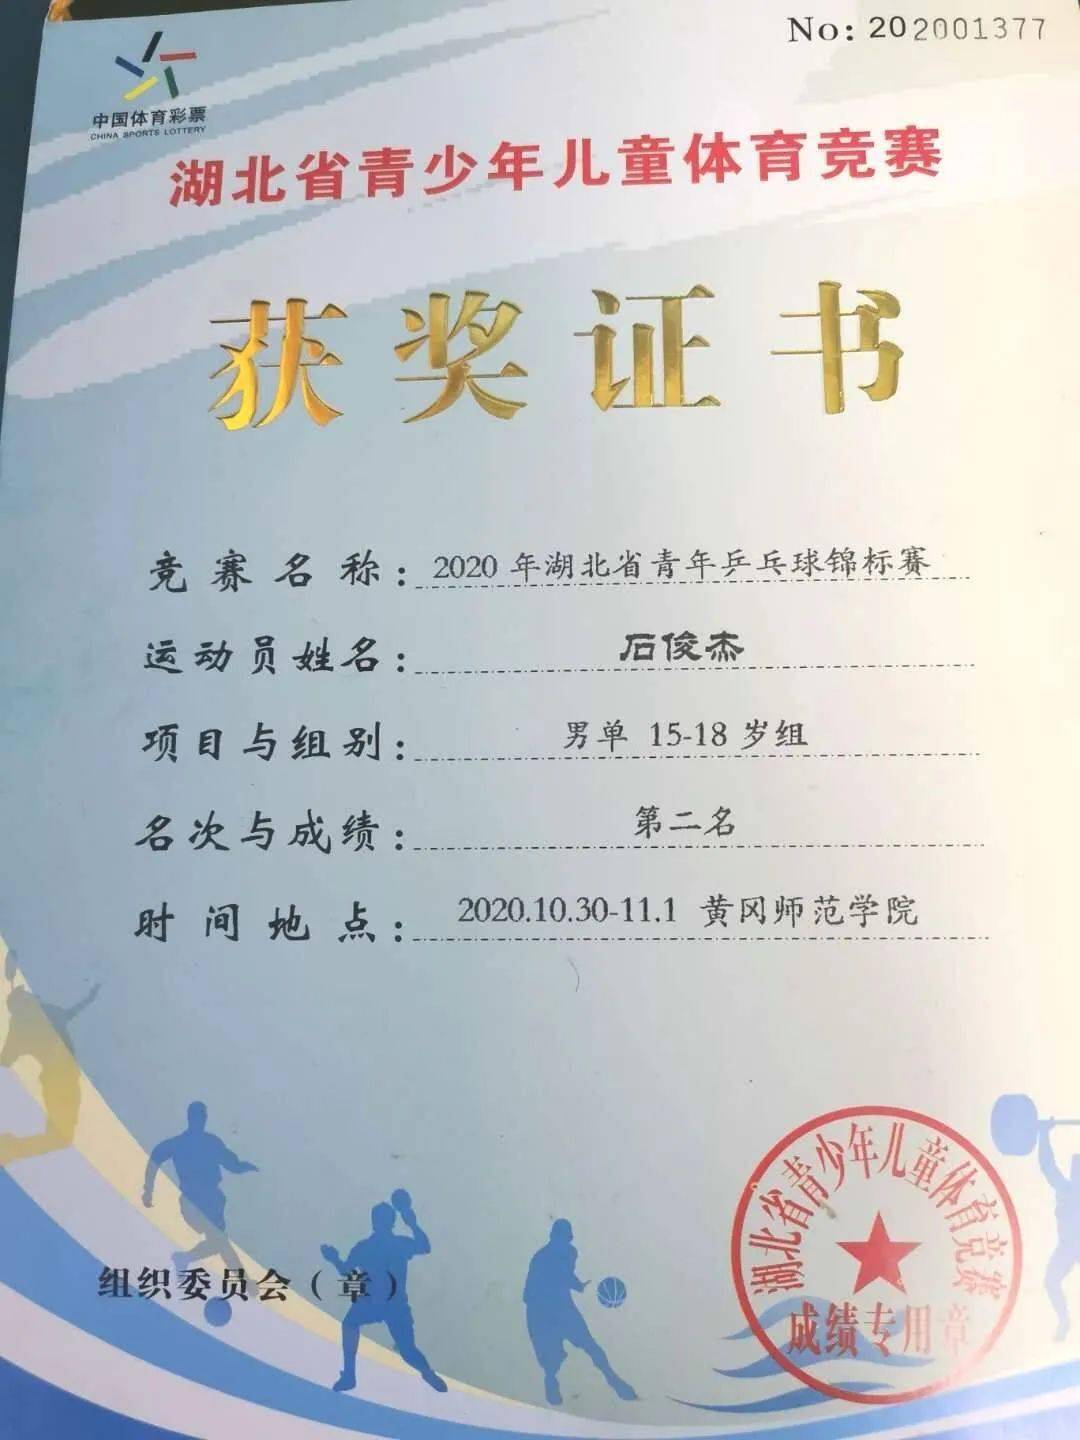 我校石俊杰同学获湖北省乒乓球锦标赛单打亚军